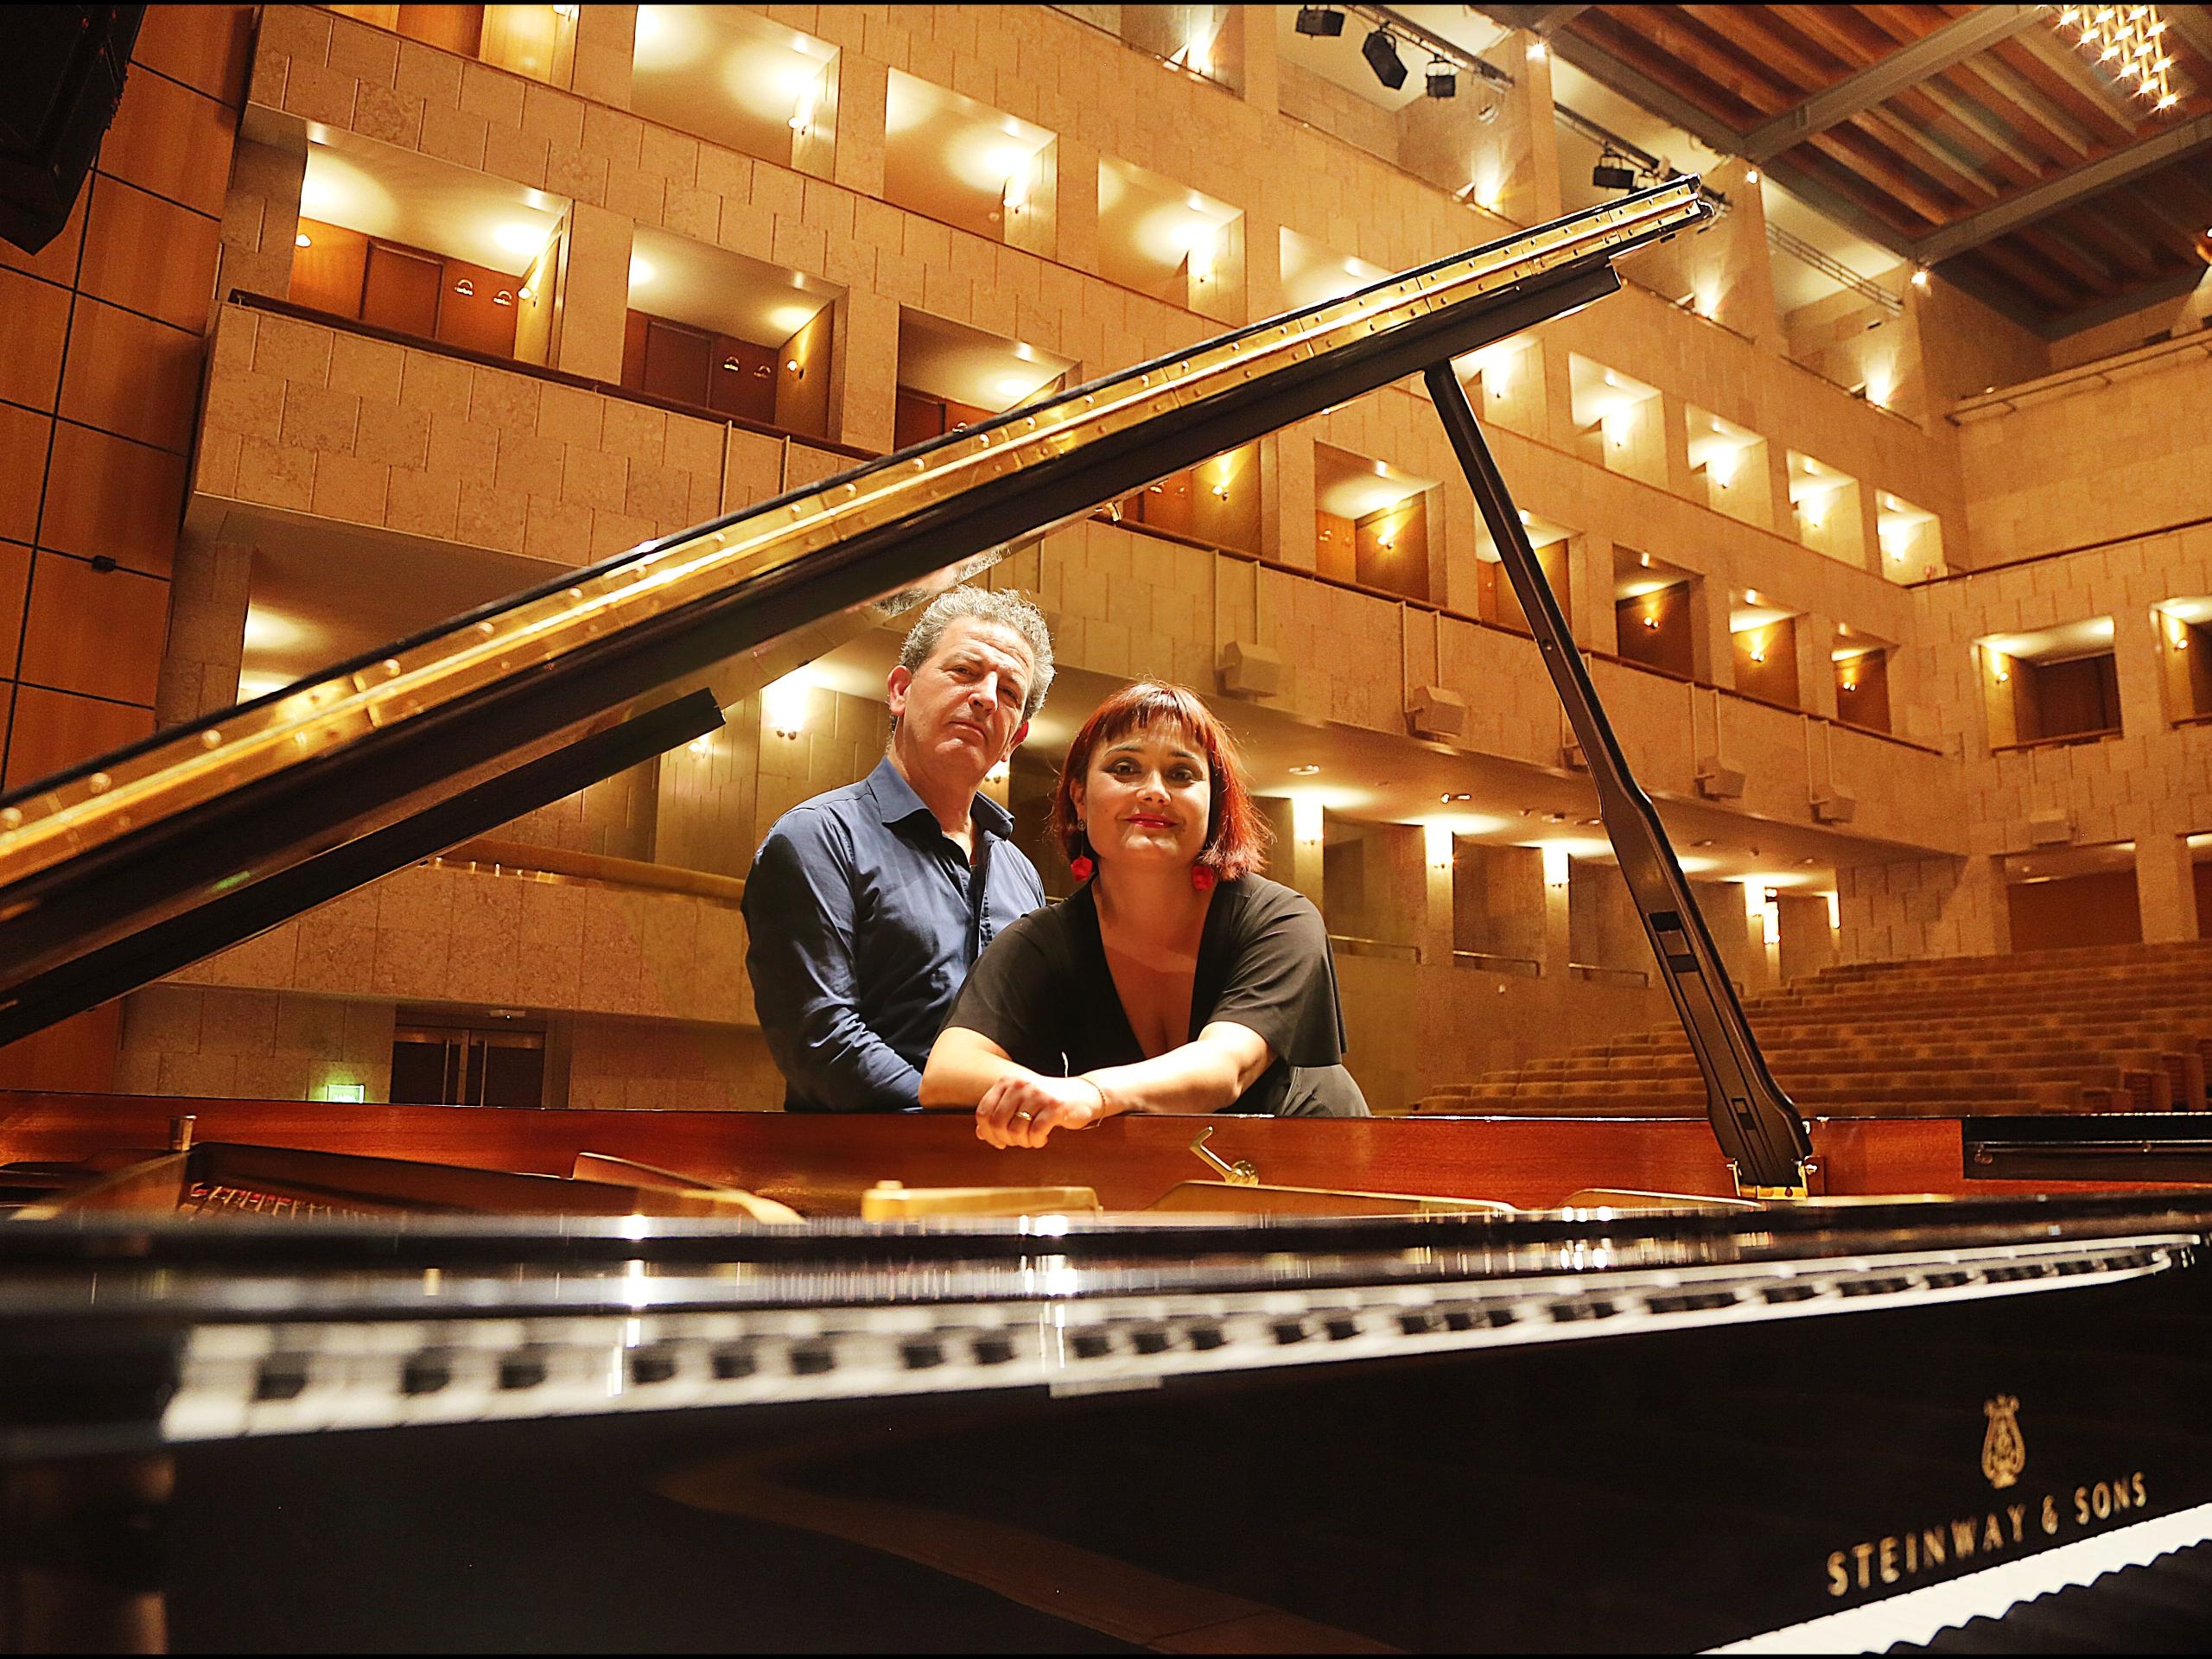 António Rosado e Melissa Fontoura apresentam “Concerto a 4 mãos” este sábado na Gafanha da Naz(...)